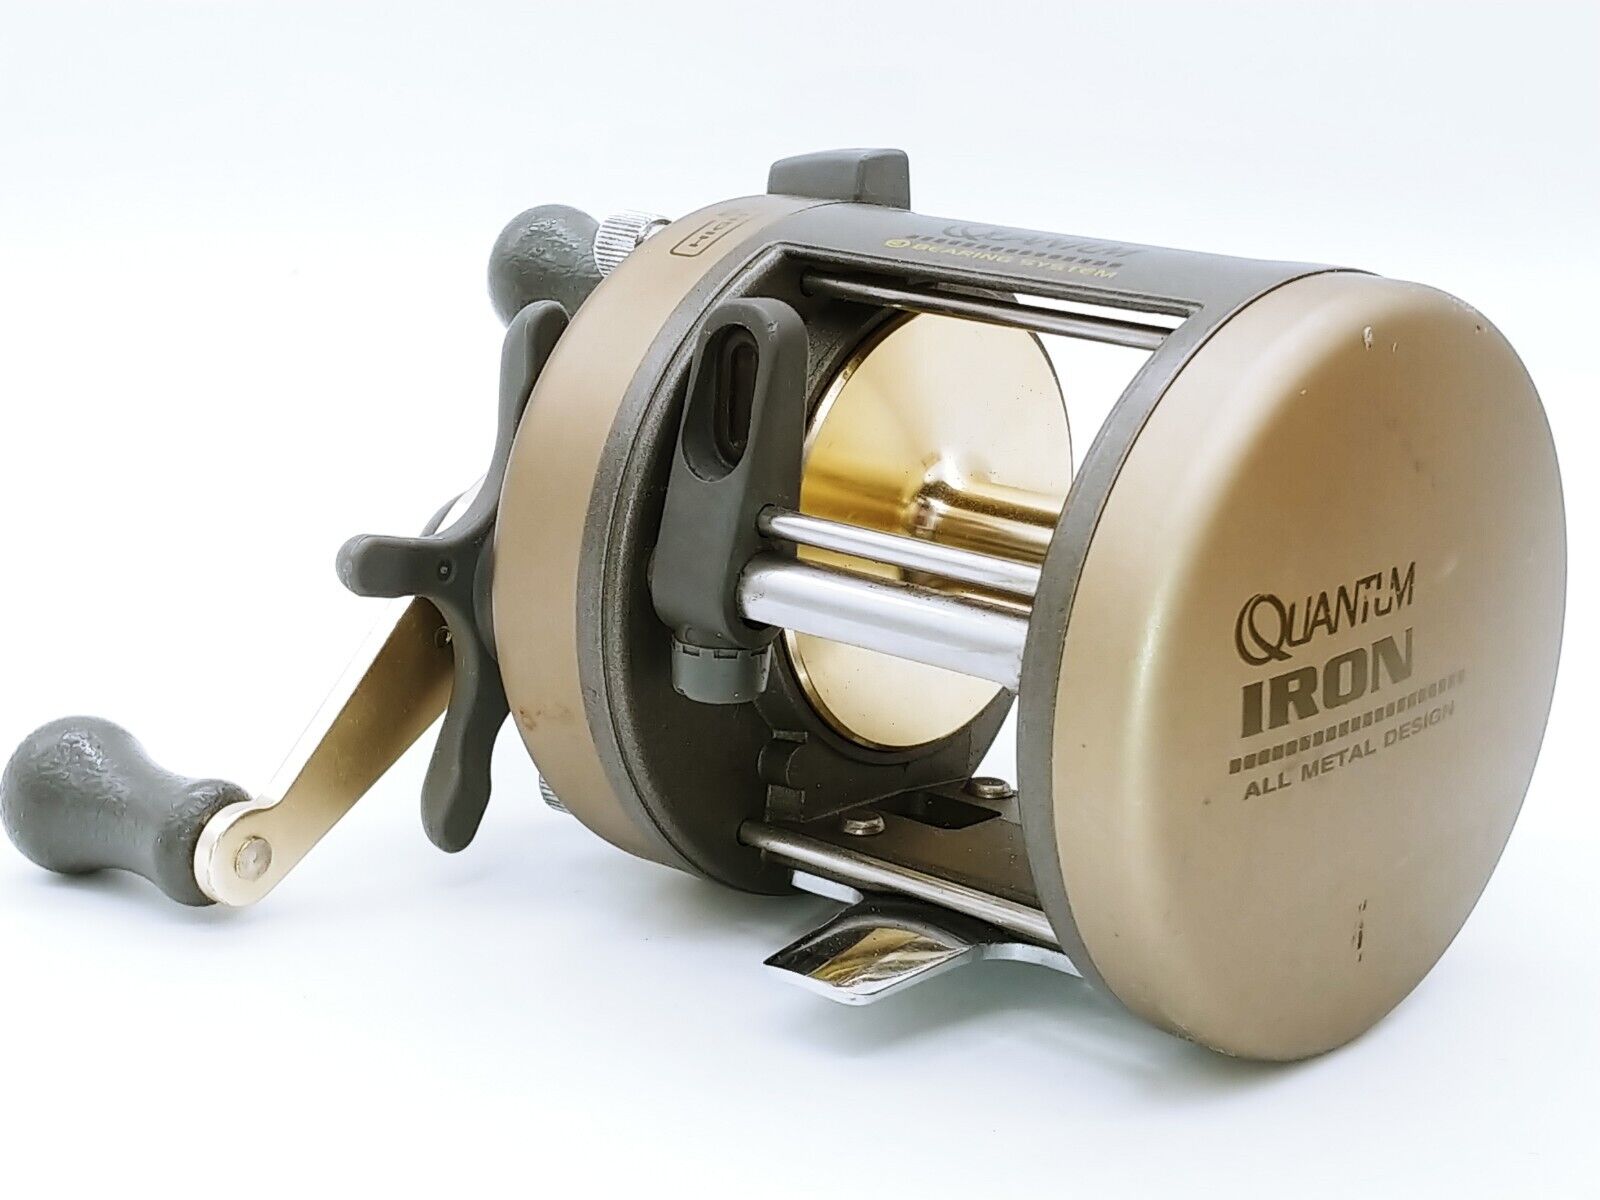 Quantum Iron IR320 Baitcasting Fishing Reel Clicker Catfish Muskie Pike Bass